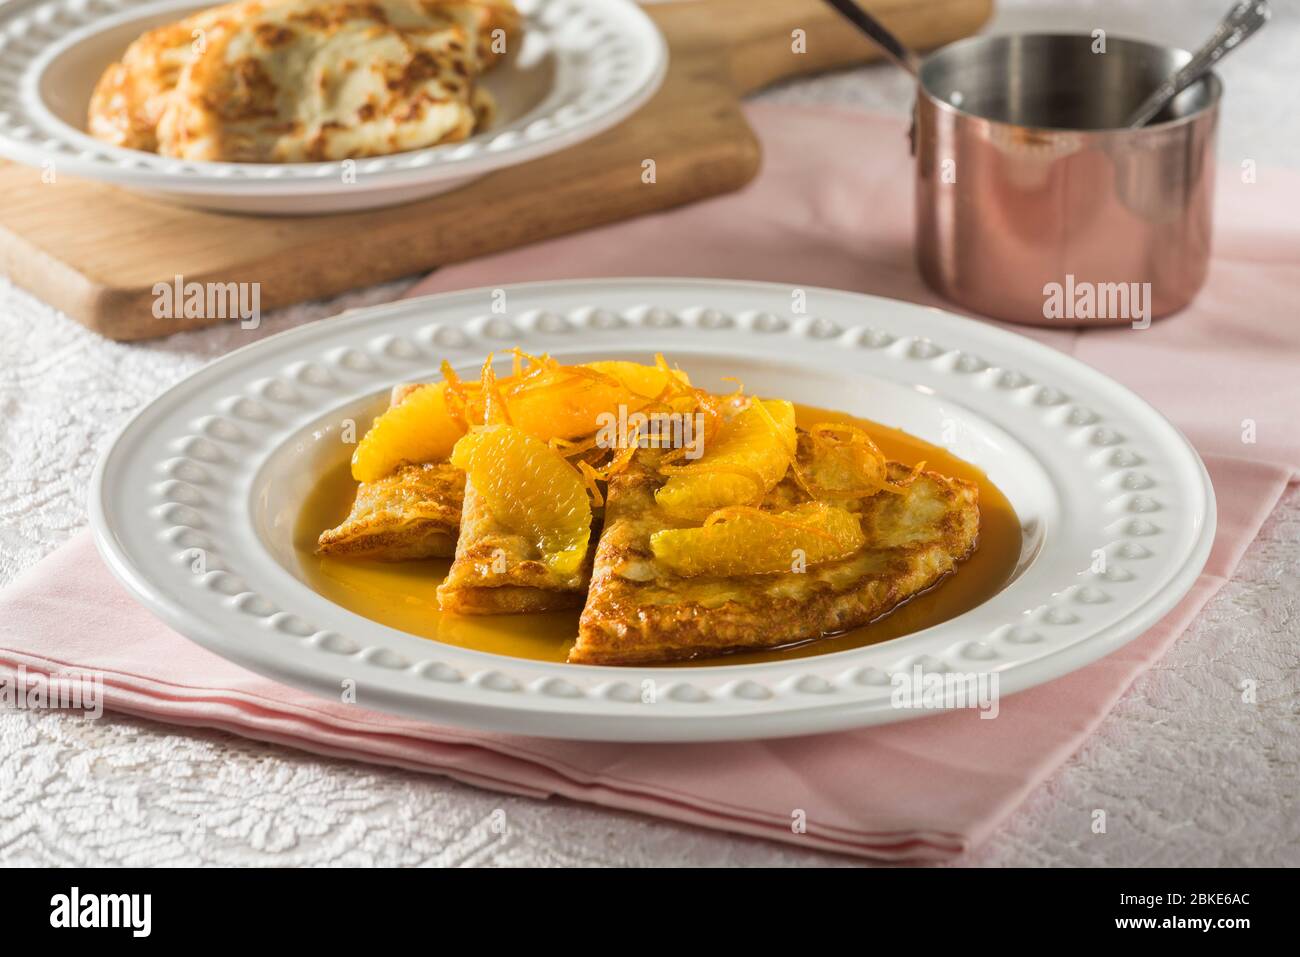 Crêpes Suzette. Pancakes in orange liqueur sauce. Stock Photo